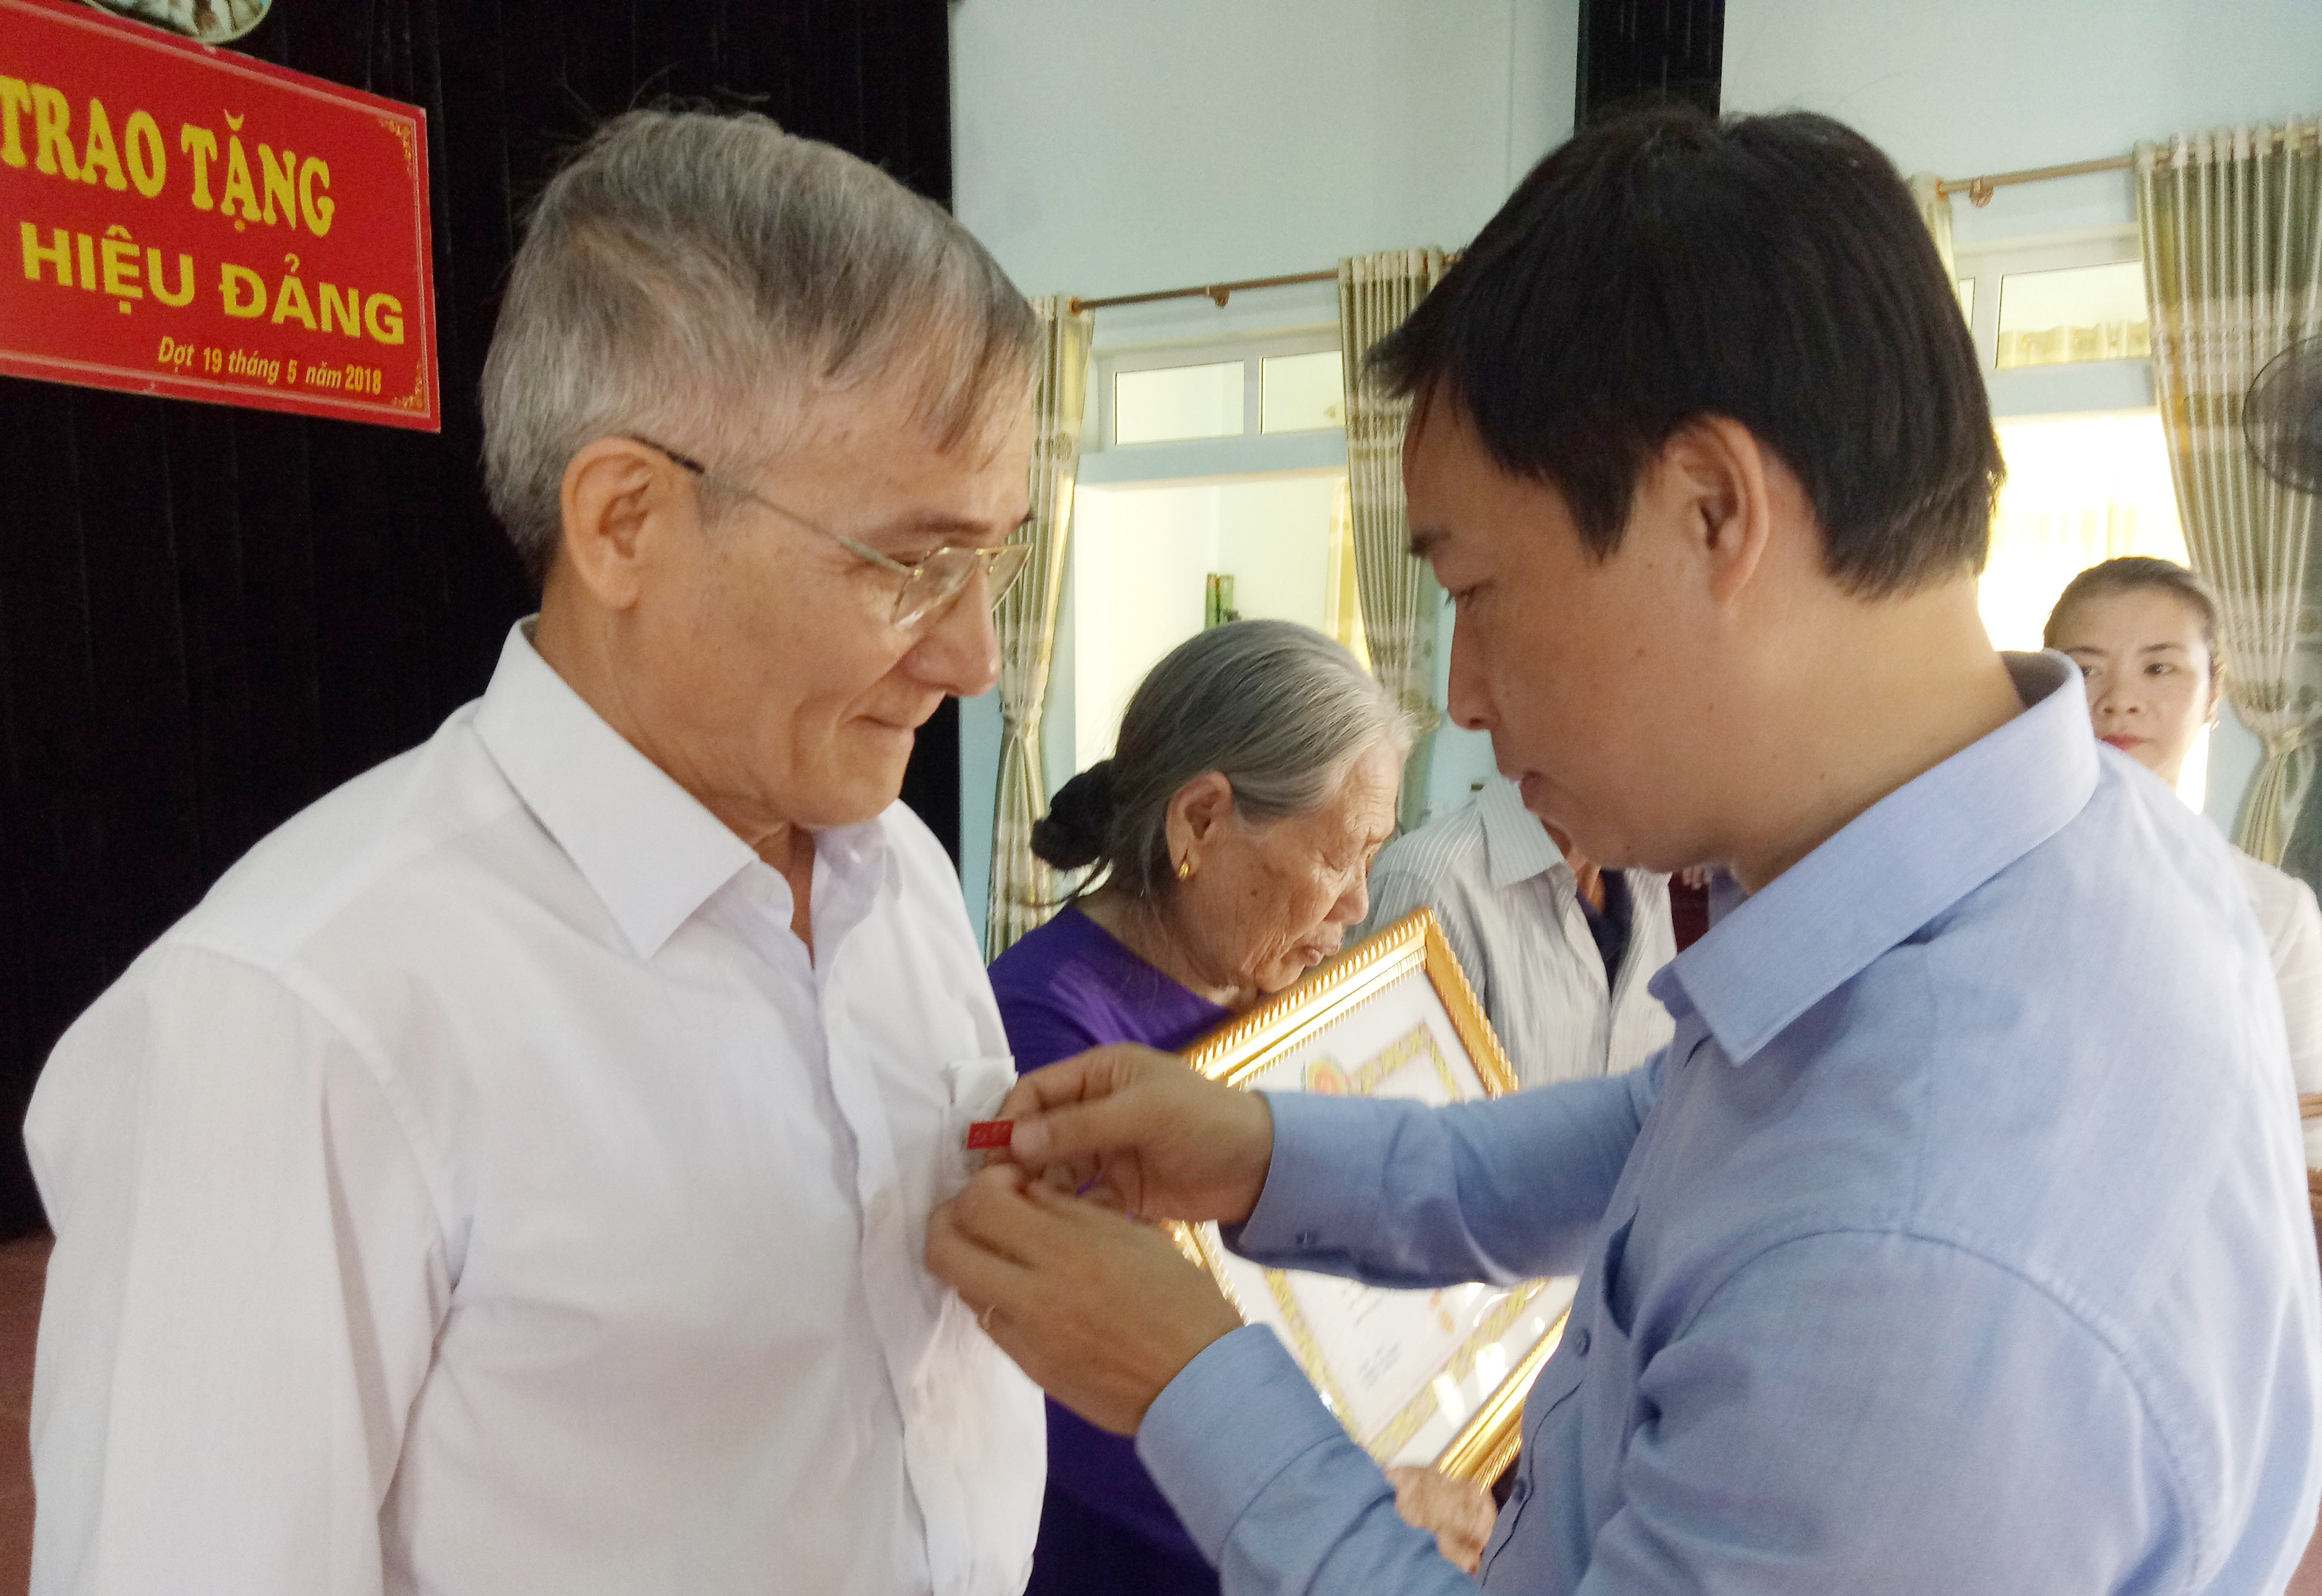 Lãnh đạo huyện ủy Nghĩa Đàn trao huy hiểu Đảng cho các đảng viên tại xã Tây Hiếu. Ảnh: Quang Huy.